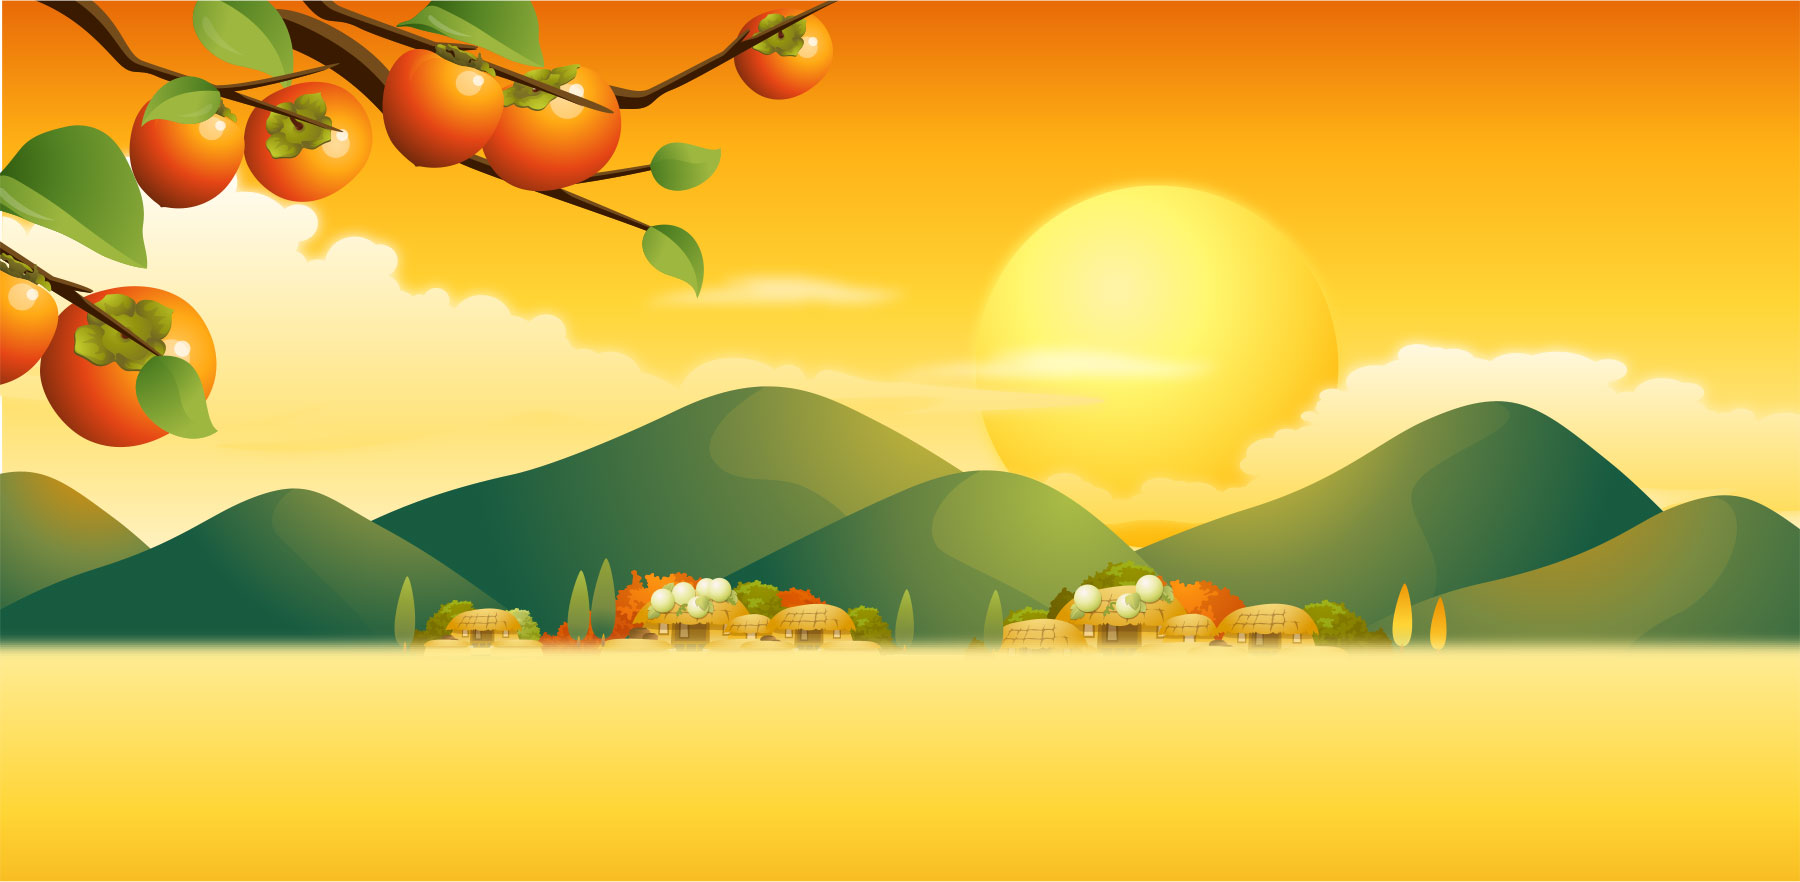 秋のイラストno 297 柿の木 夕暮れ 無料のフリー素材集 花鳥風月